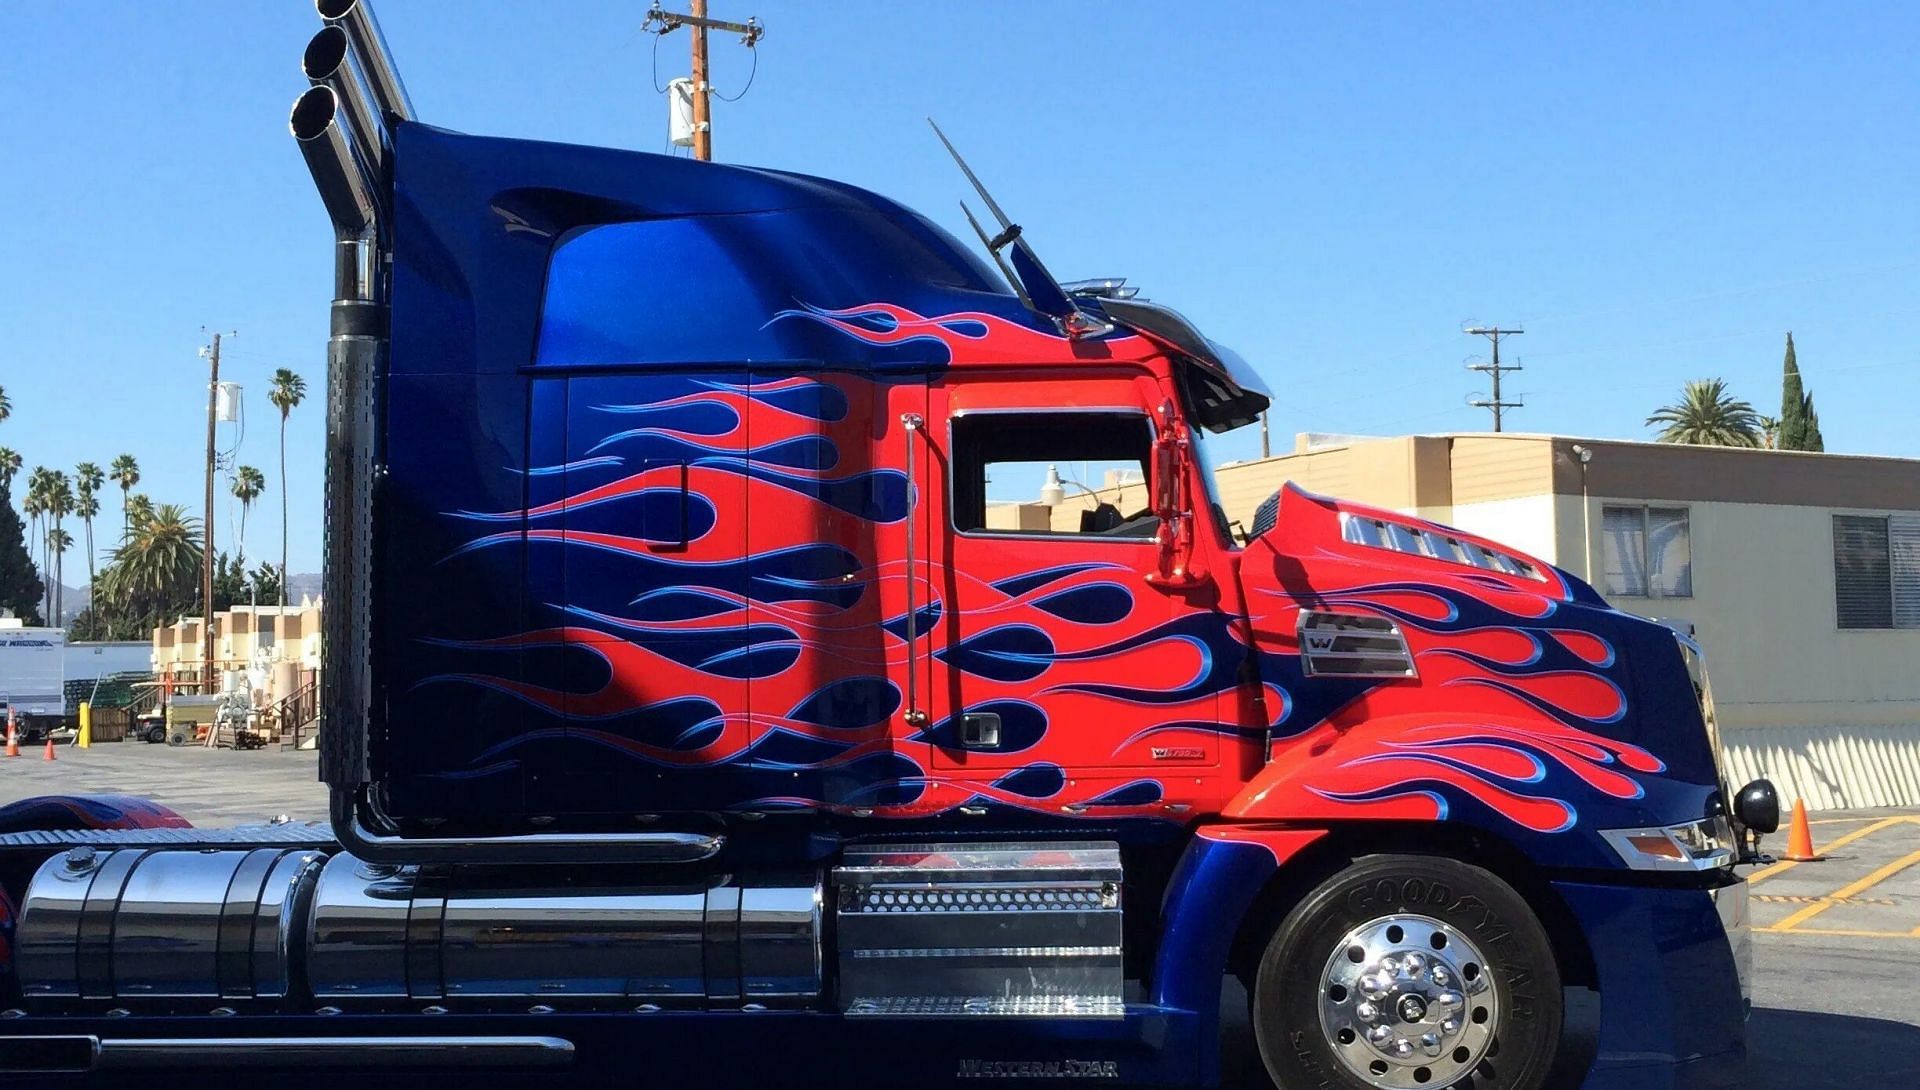 The Optimus Prime truck (Image via Paramount)